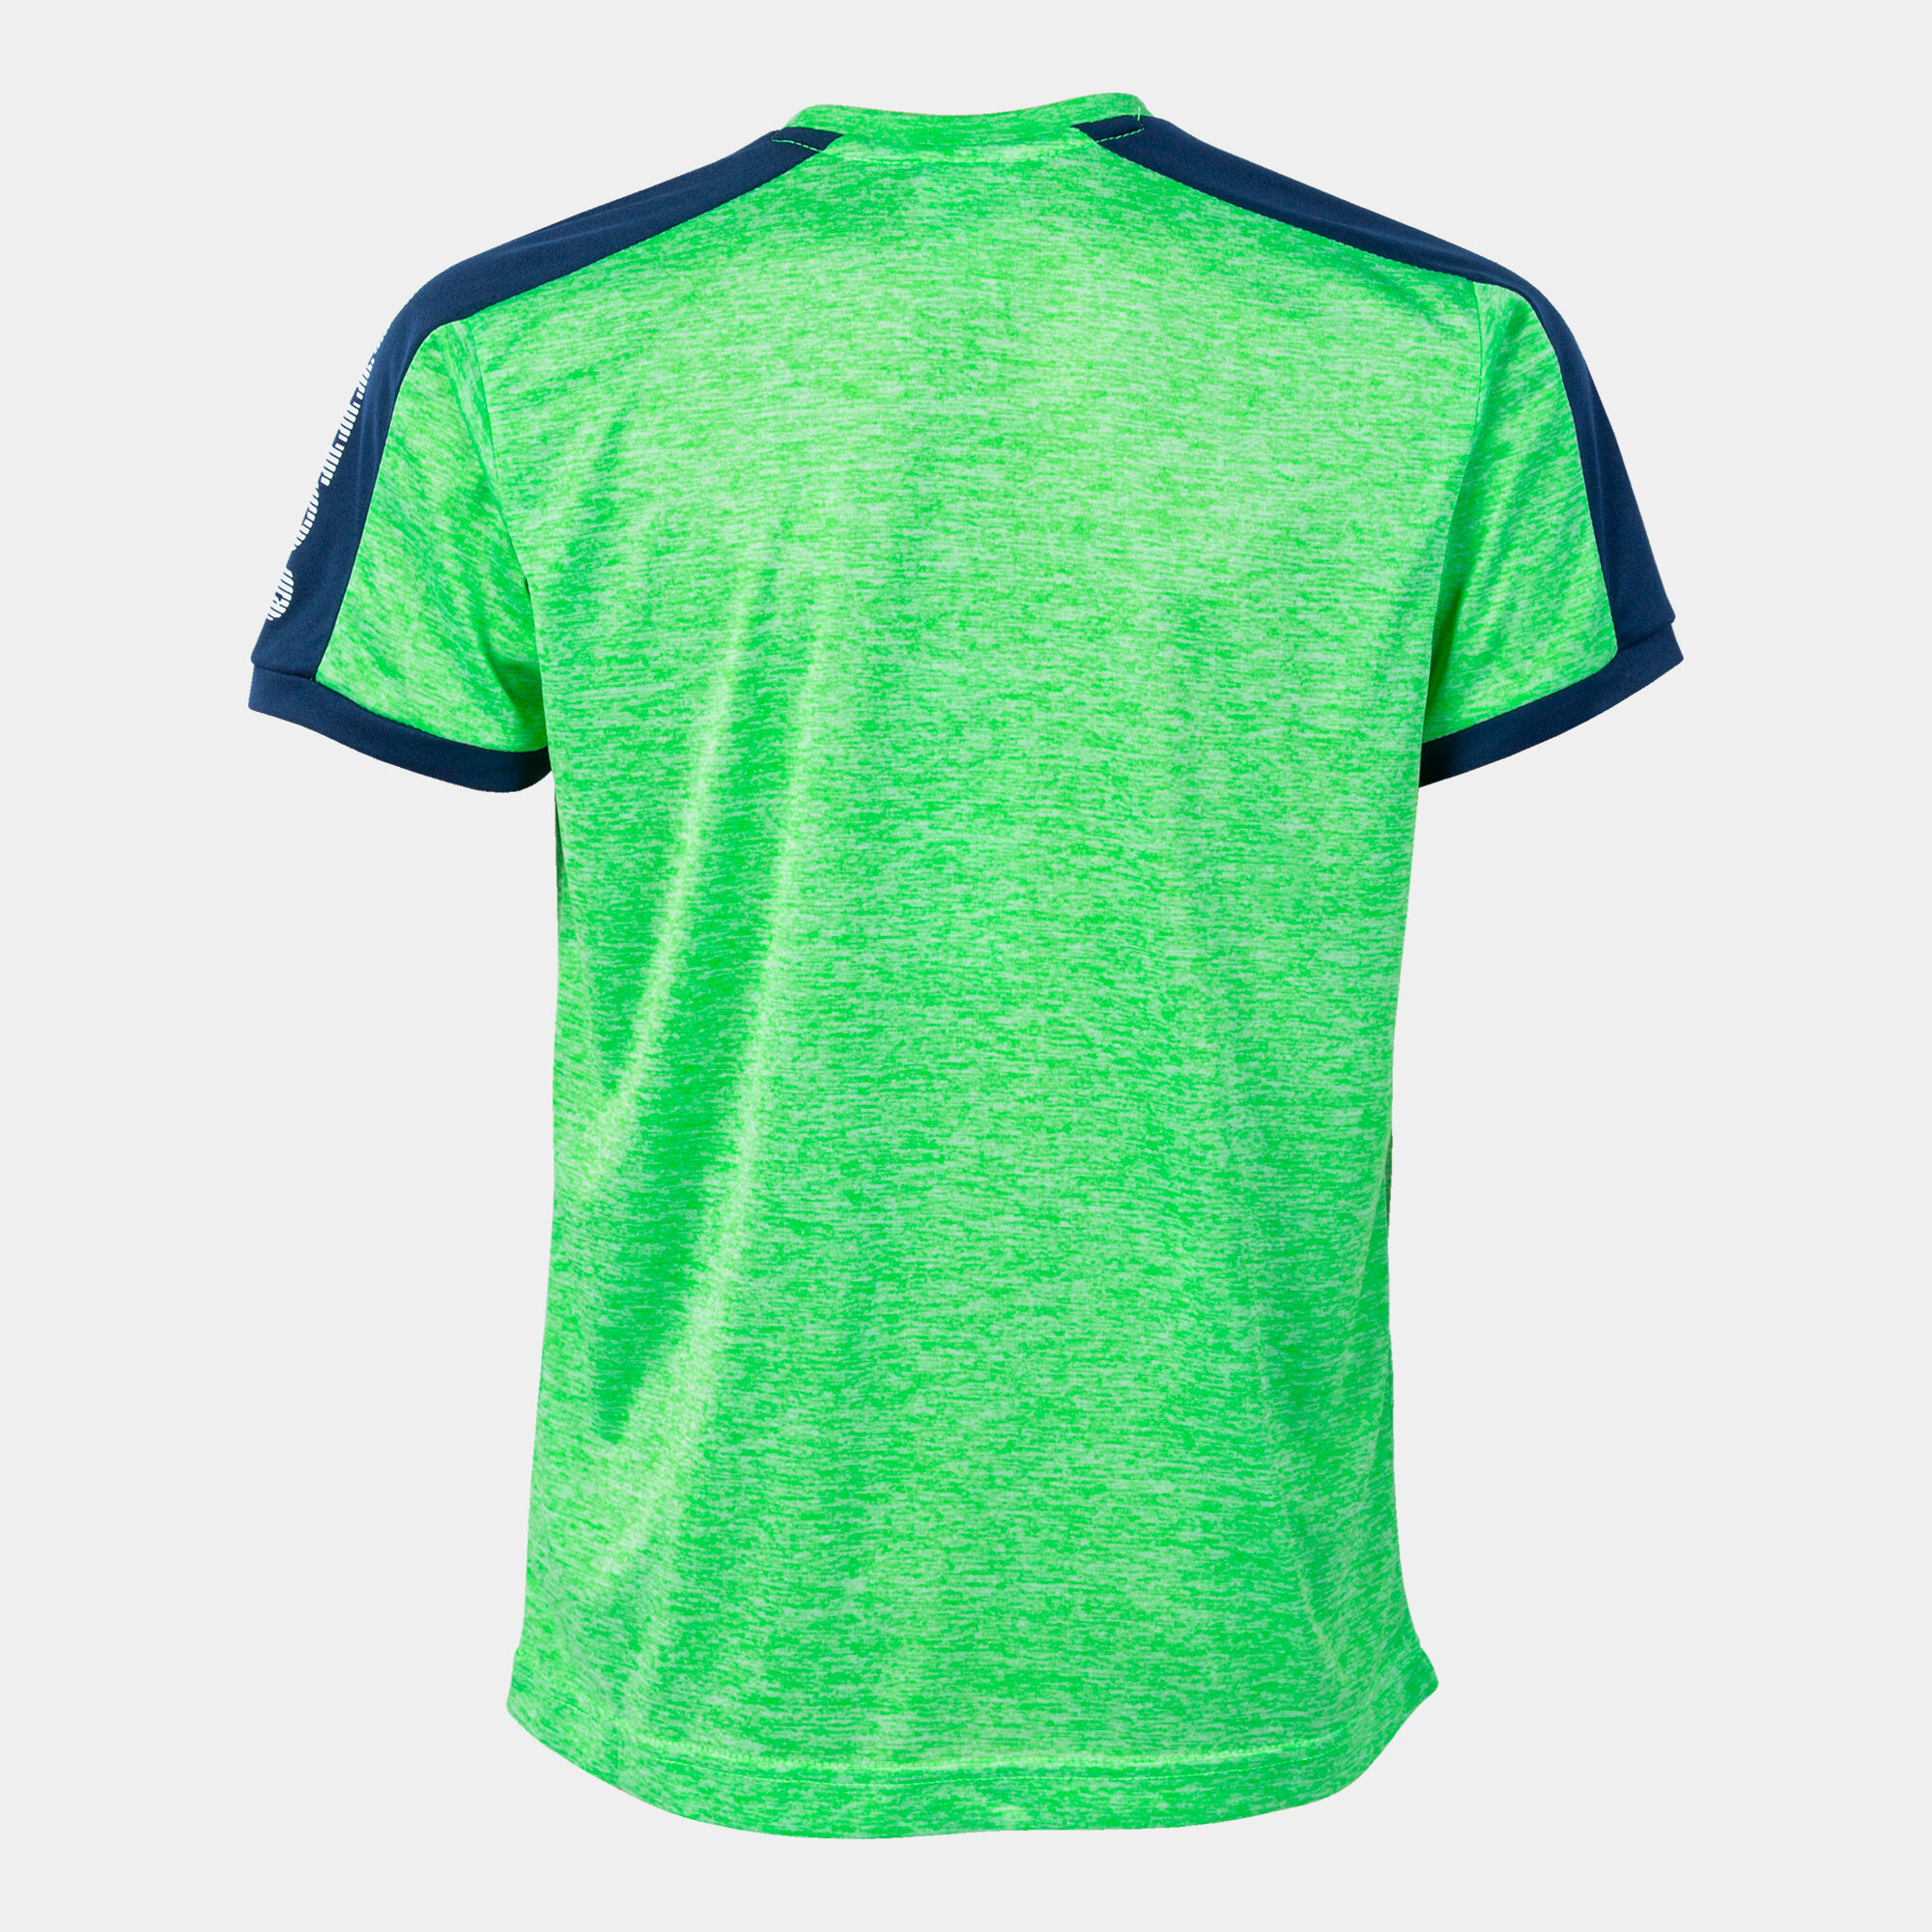 Camiseta manga corta hombre Escanu verde flúor gris melange marino